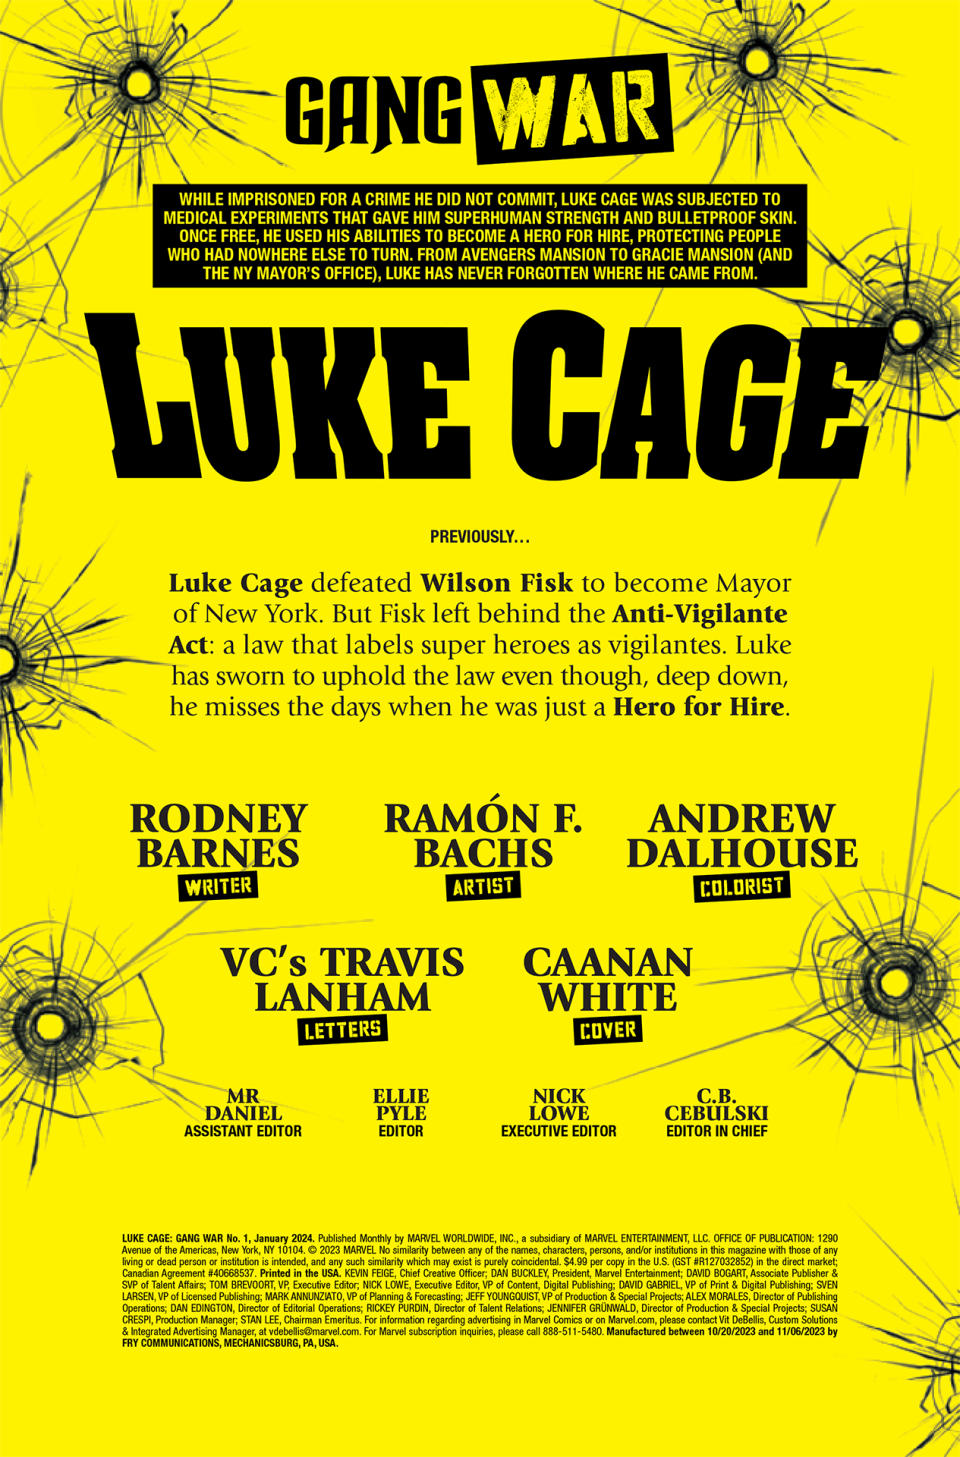 Luke Cage: Gang War #1 page